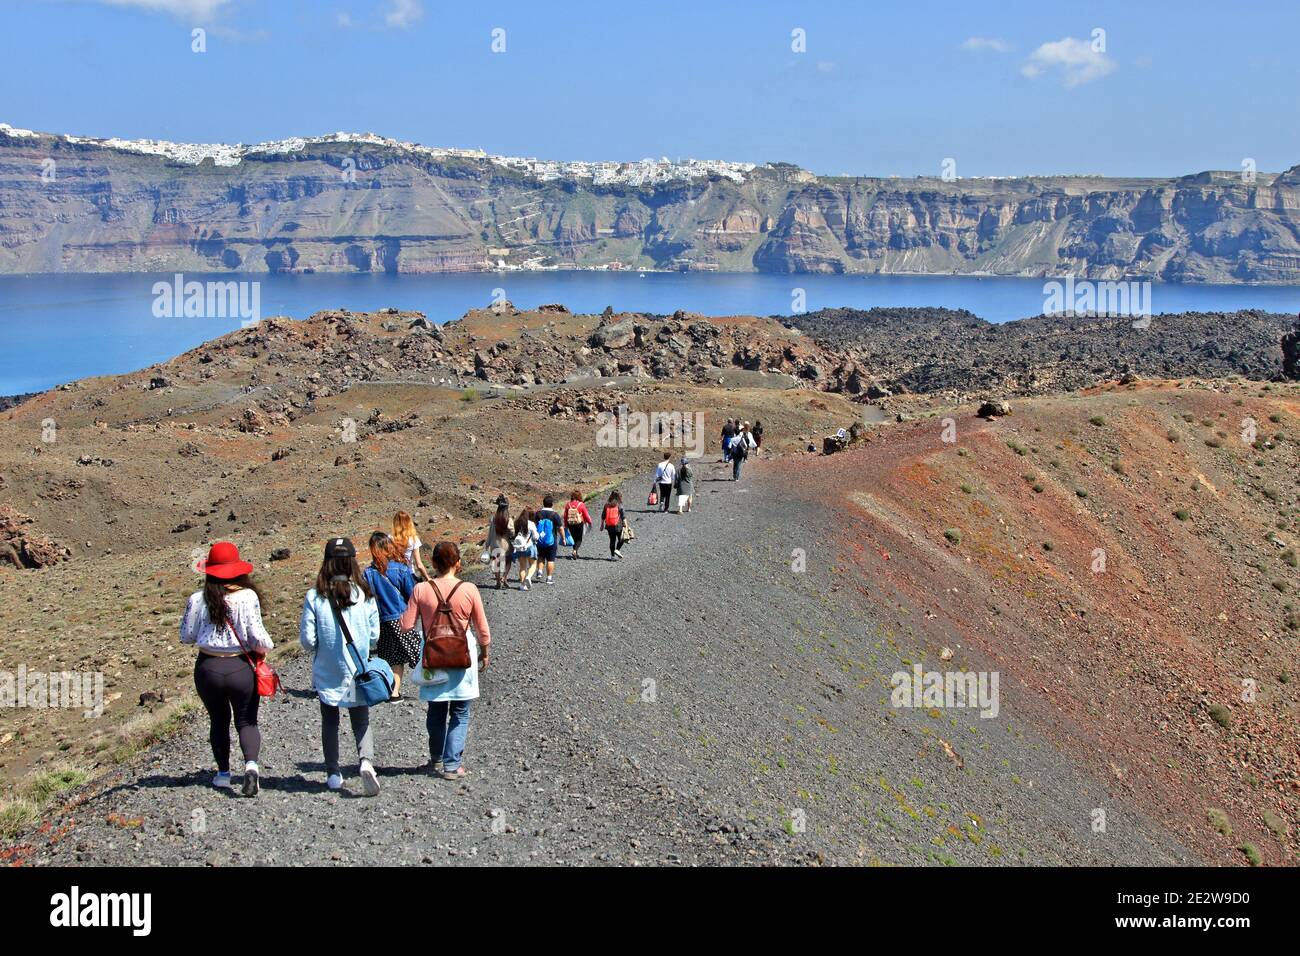 Les touristes qui se promeaient au-dessus du volcan actif de Santorin, sur l'île de Nea Kameni. En arrière-plan, il y a la caldera de Santorin. Banque D'Images